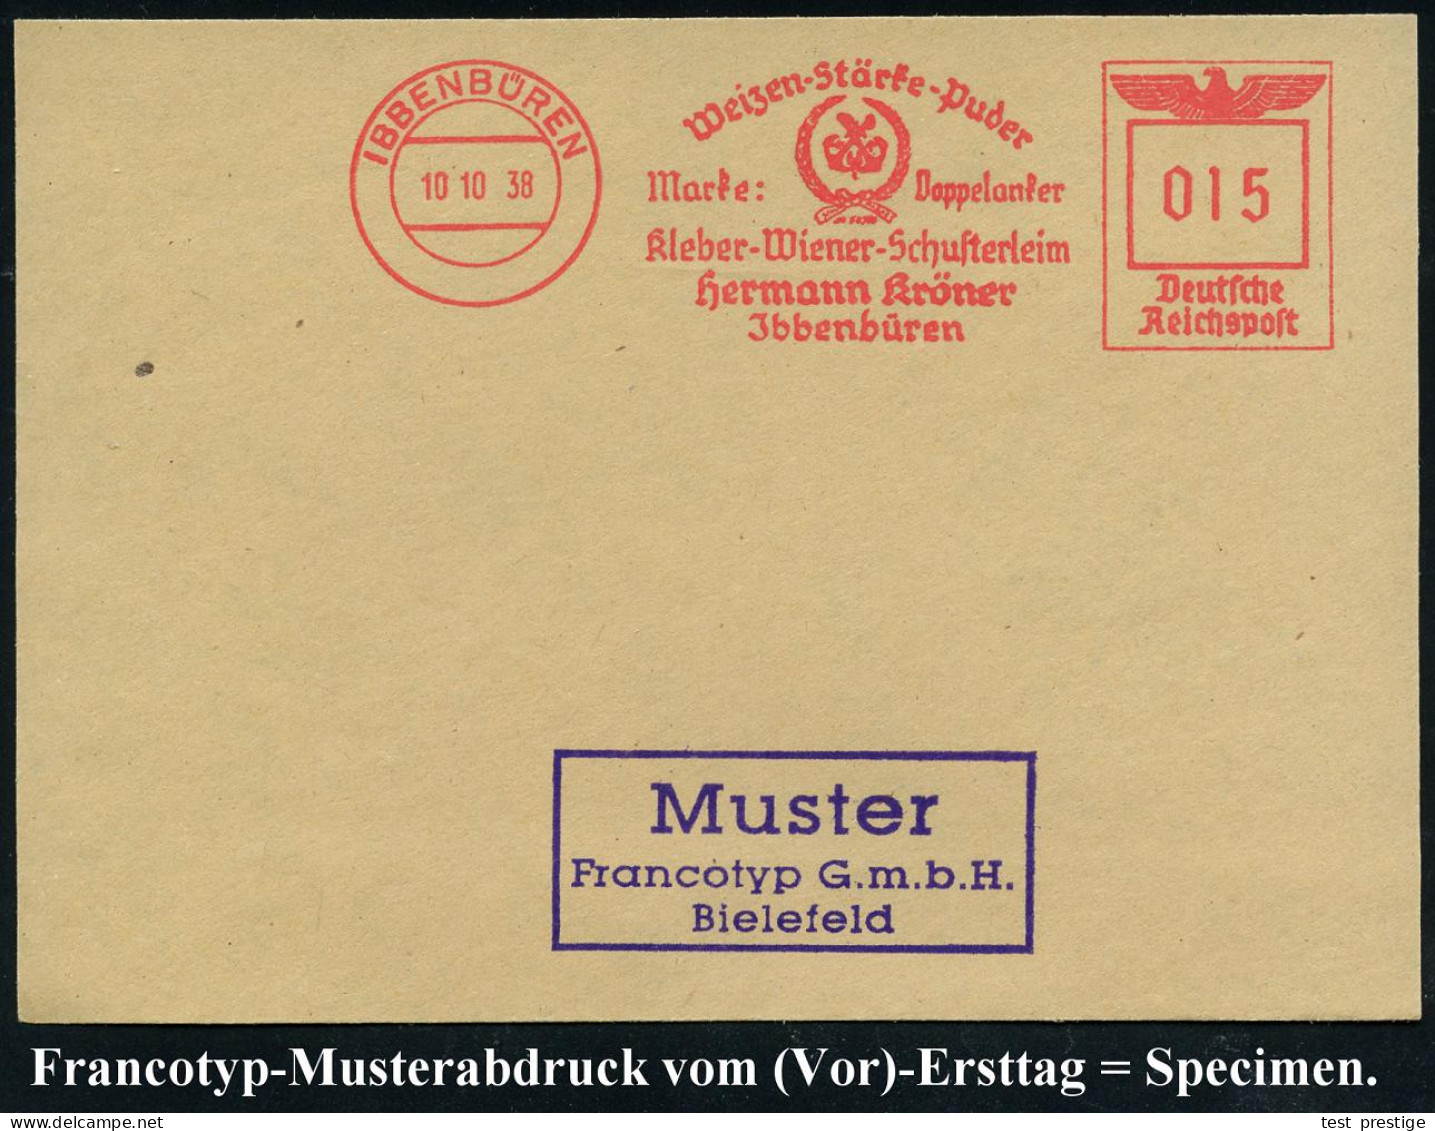 IBBENBÜREN/ Weizen-Stärke-Puder/ Marke: Doppelanker/ Kleber-Wiener-Schusterleim/ Hermann Kröner 1938 (10.10.) AFS-Muster - Chemie